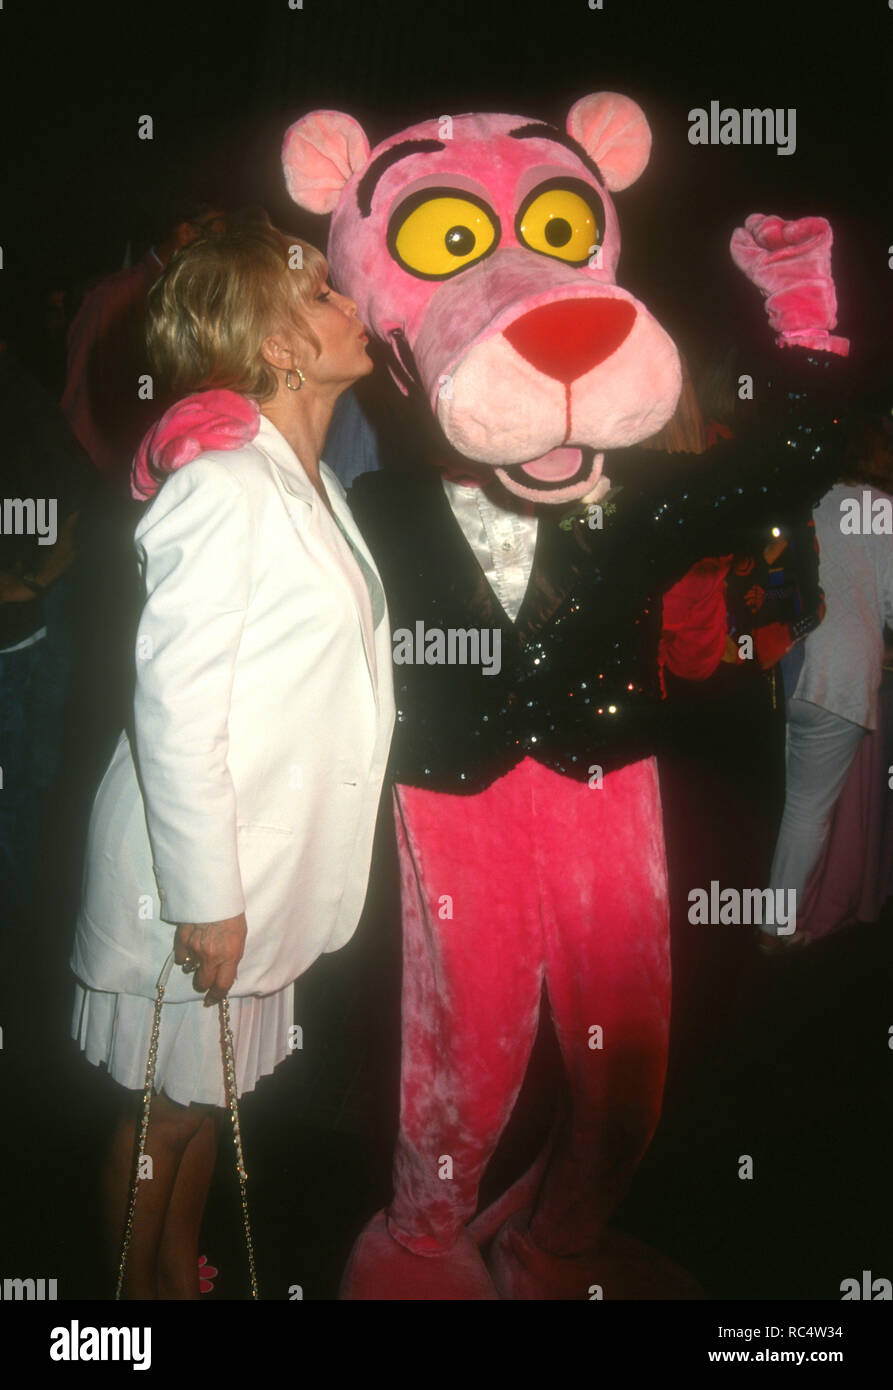 WESTWOOD, CA - 26. August: Schauspielerin Barbara Eden besucht "Der Sohn der Pink Panther' Premiere am 26 August, 1993 t Avco Center Kinos in Westwood, Kalifornien. Foto von Barry King/Alamy Stock Foto Stockfoto